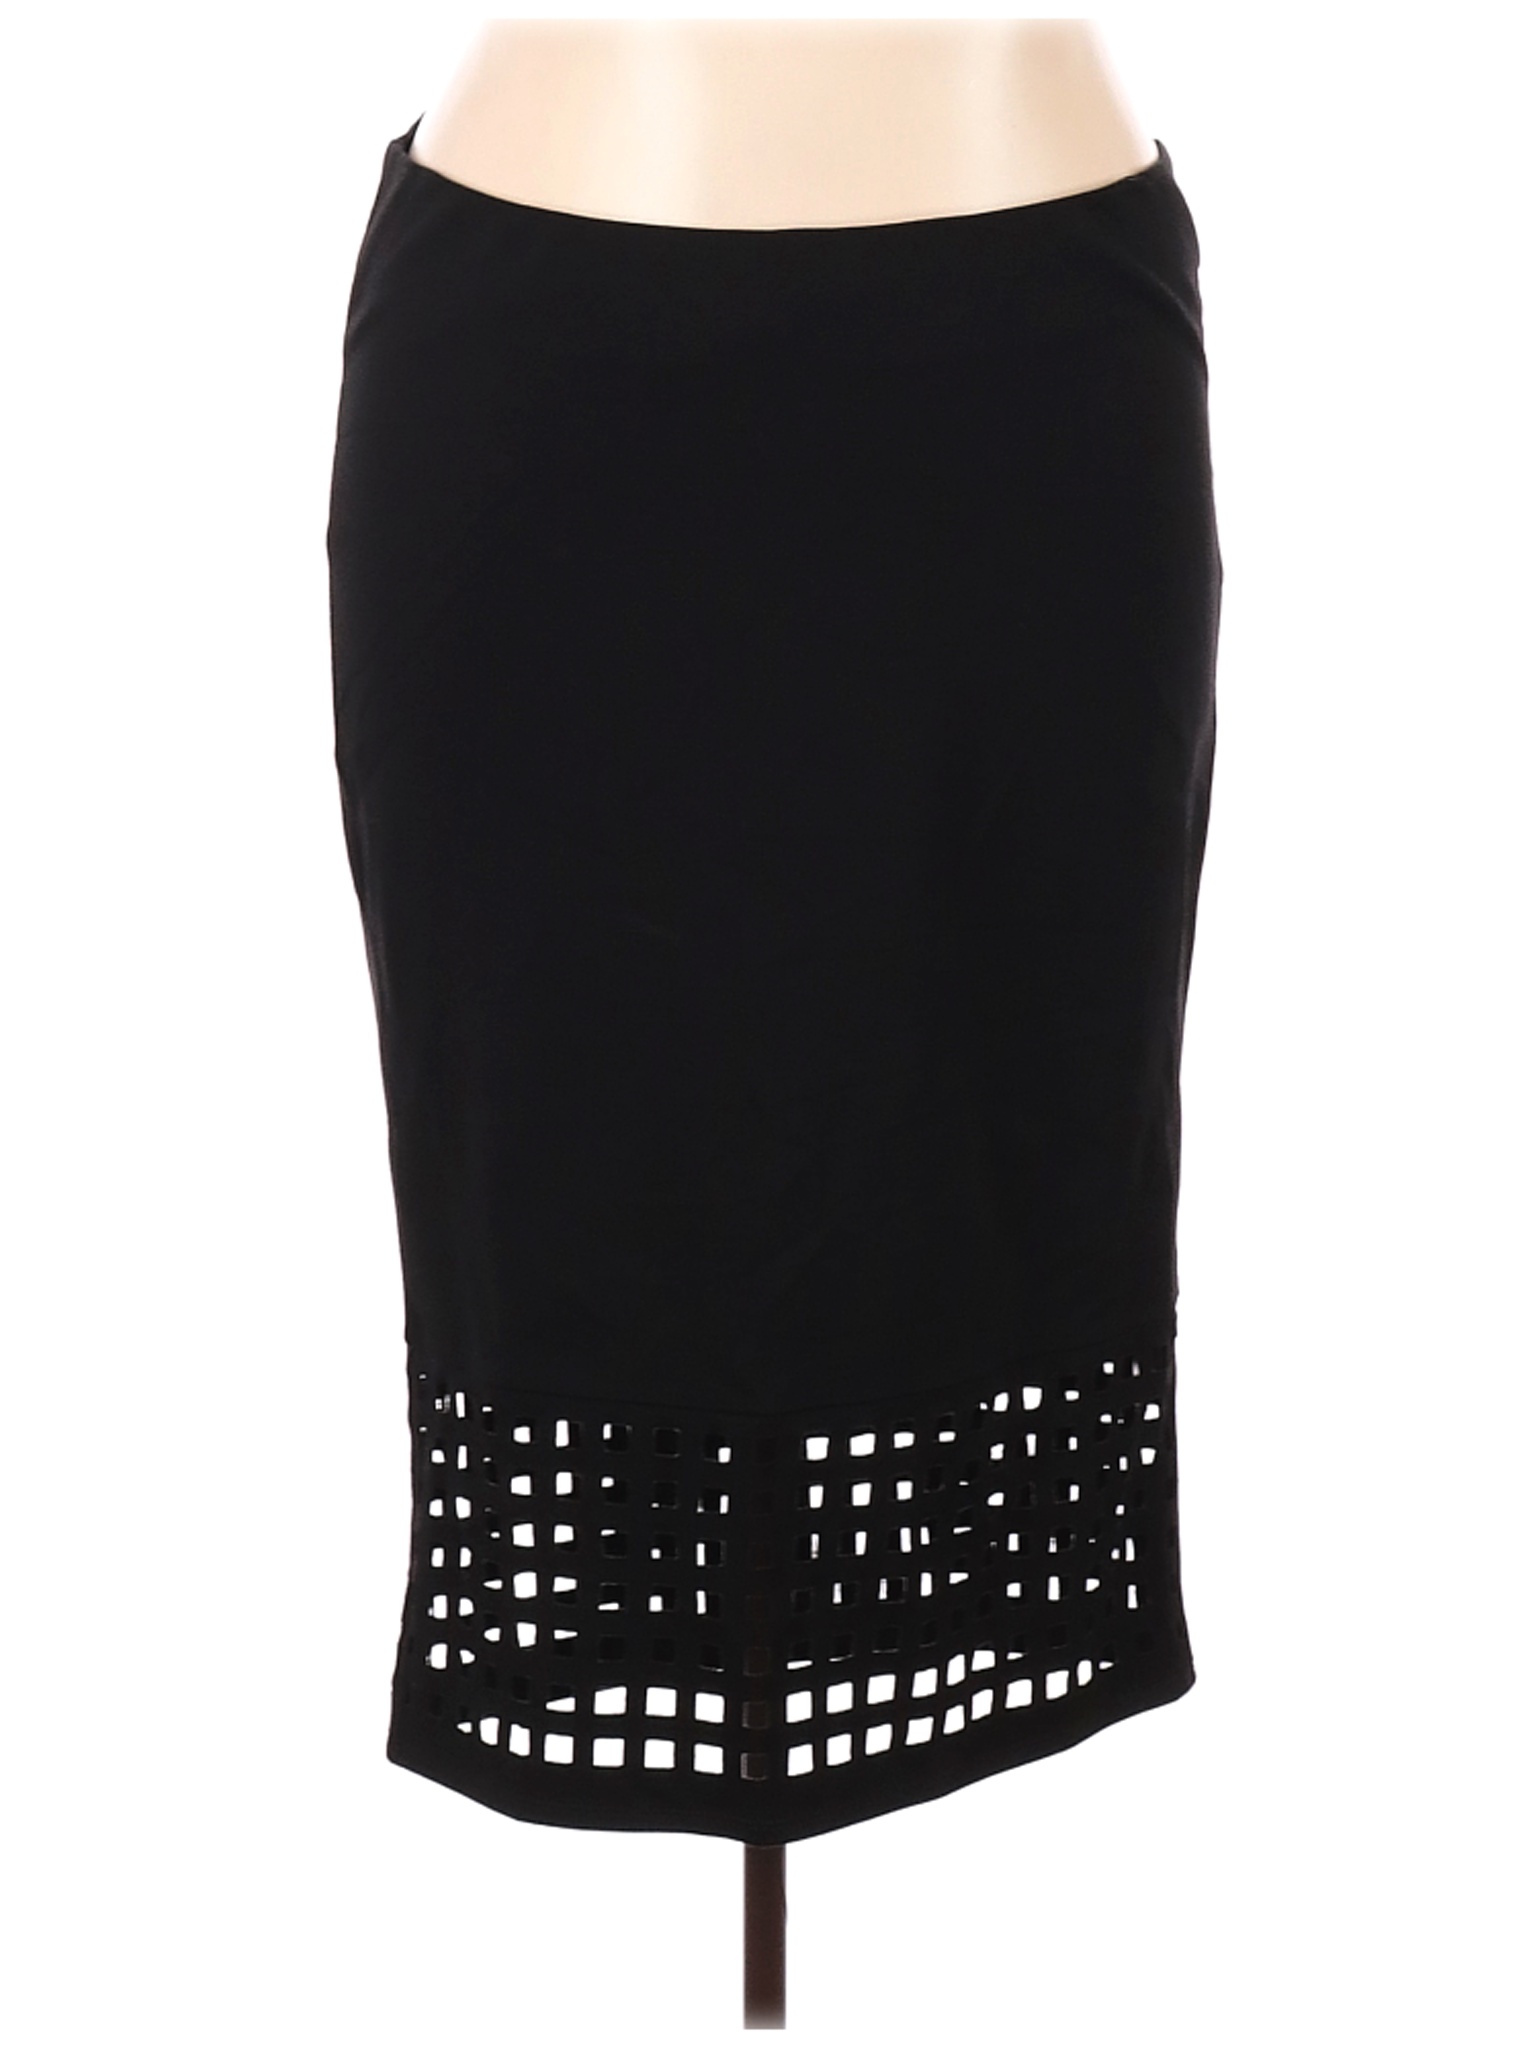 Torrid Women Black Casual Skirt 3X Plus | eBay